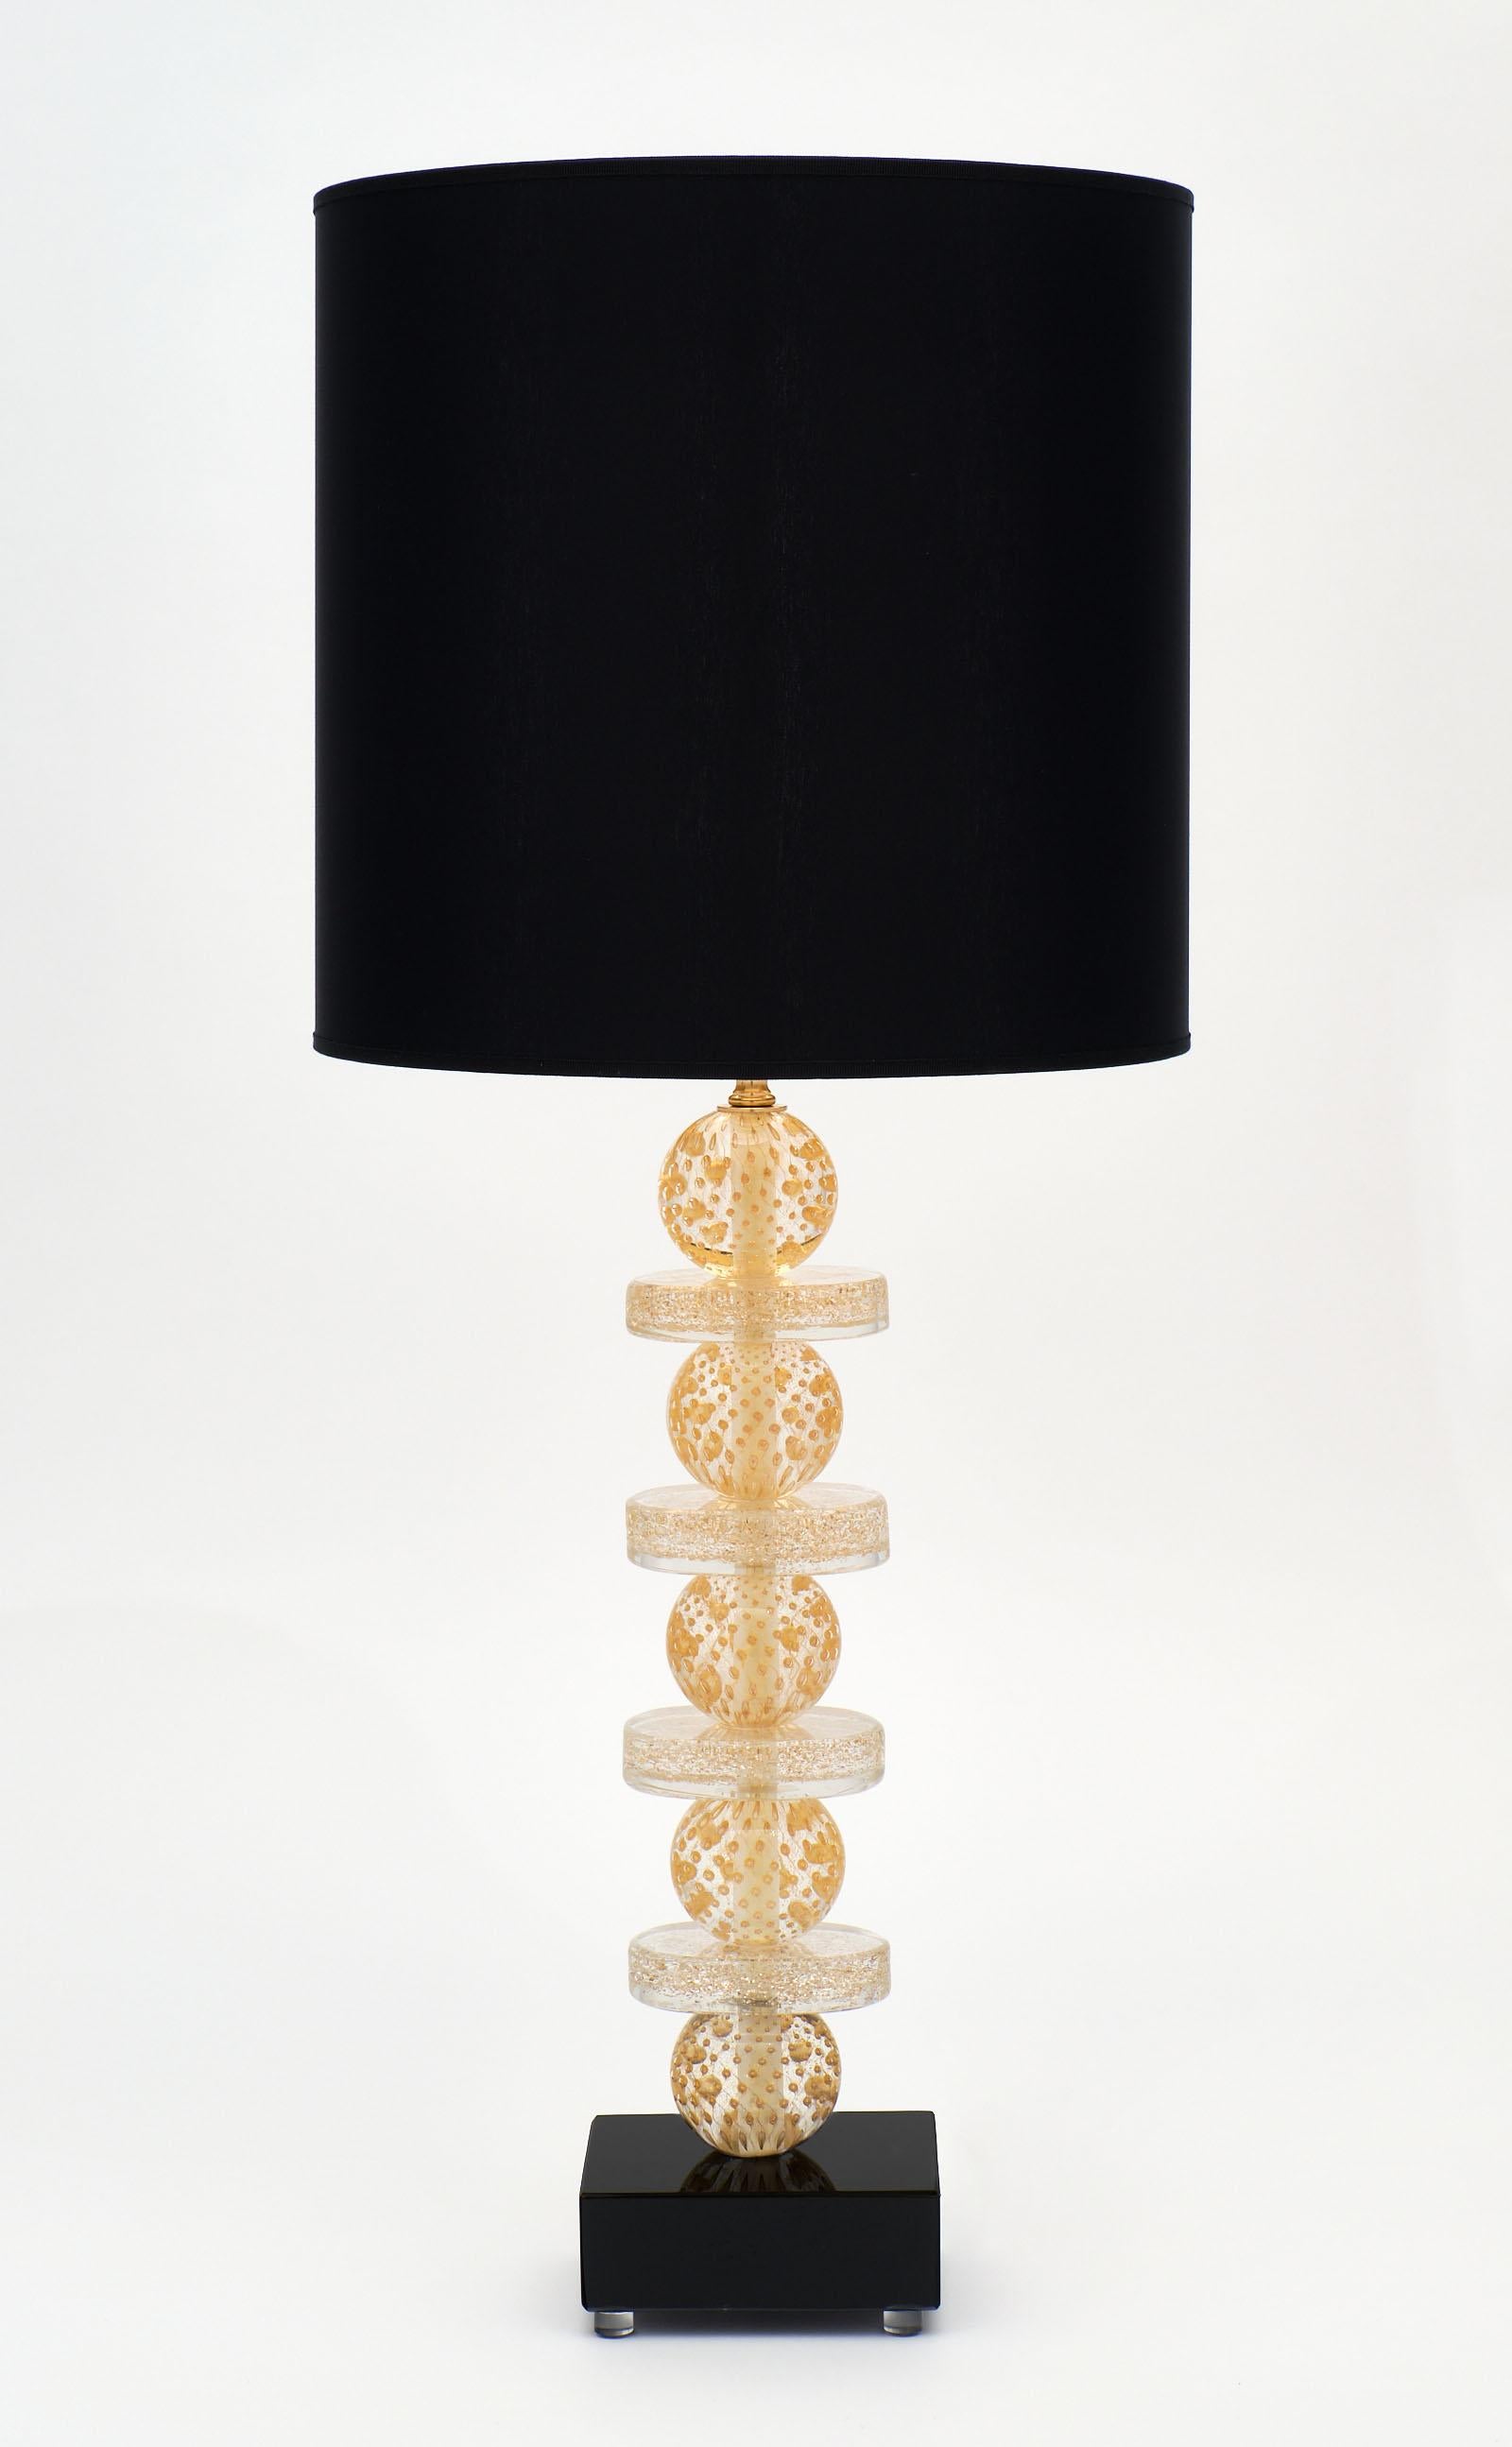 Paire de lampes en verre de Murano de couleur or et noir, présentant une combinaison de sphères et d'anneaux en verre selon la technique Avventurina, créée en infusant le verre avec des feuilles d'or 23 carats. La tige repose sur une base en verre